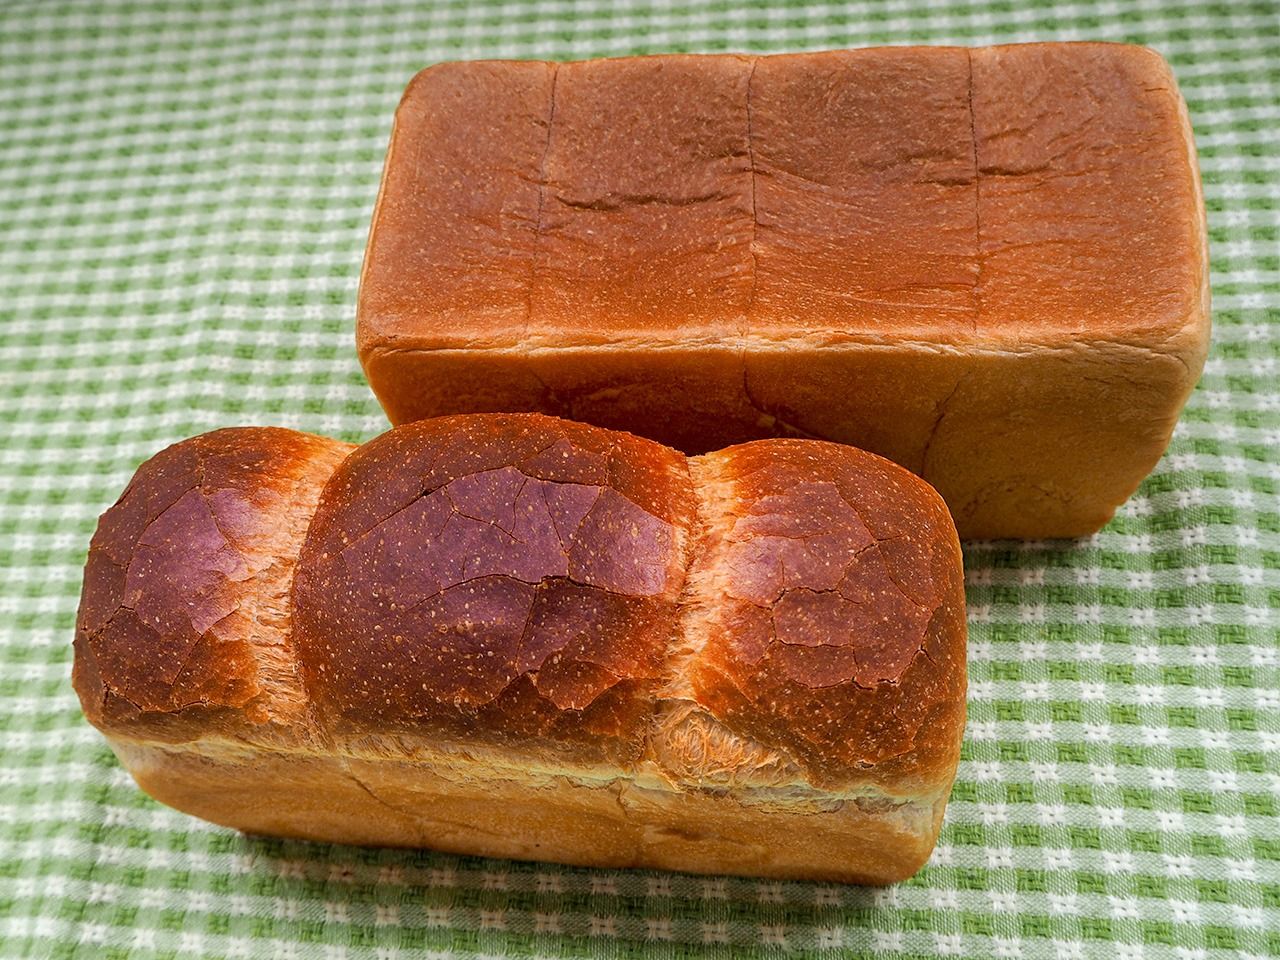 Dans le quartier de Ginza à Tokyo, Centre The Bakery, une boulangerie spécialisée dans le pain de mie, propose des pains de forme rectangulaire et du pain anglais.